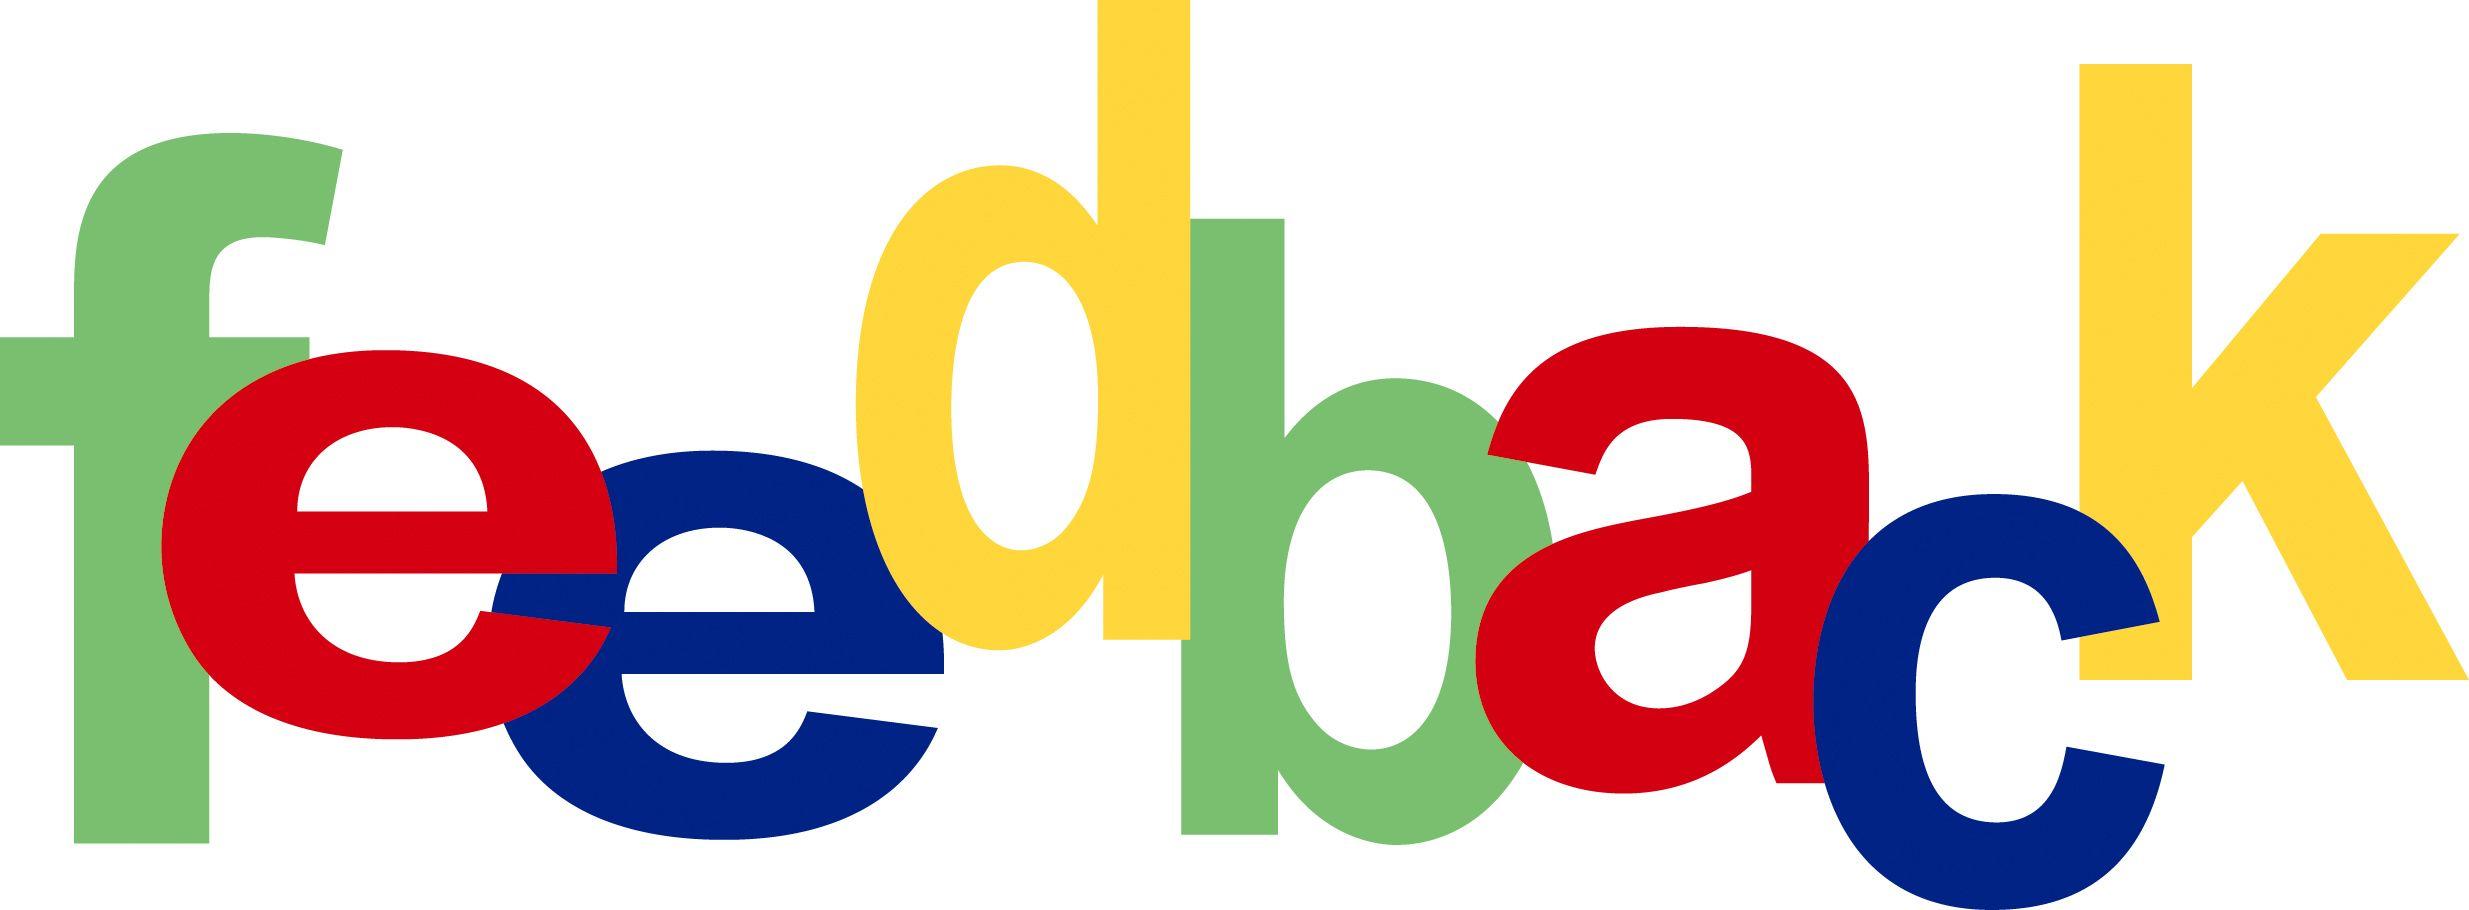 eBay Feedback Logo - eBay's worthless feedback system | Dioclese